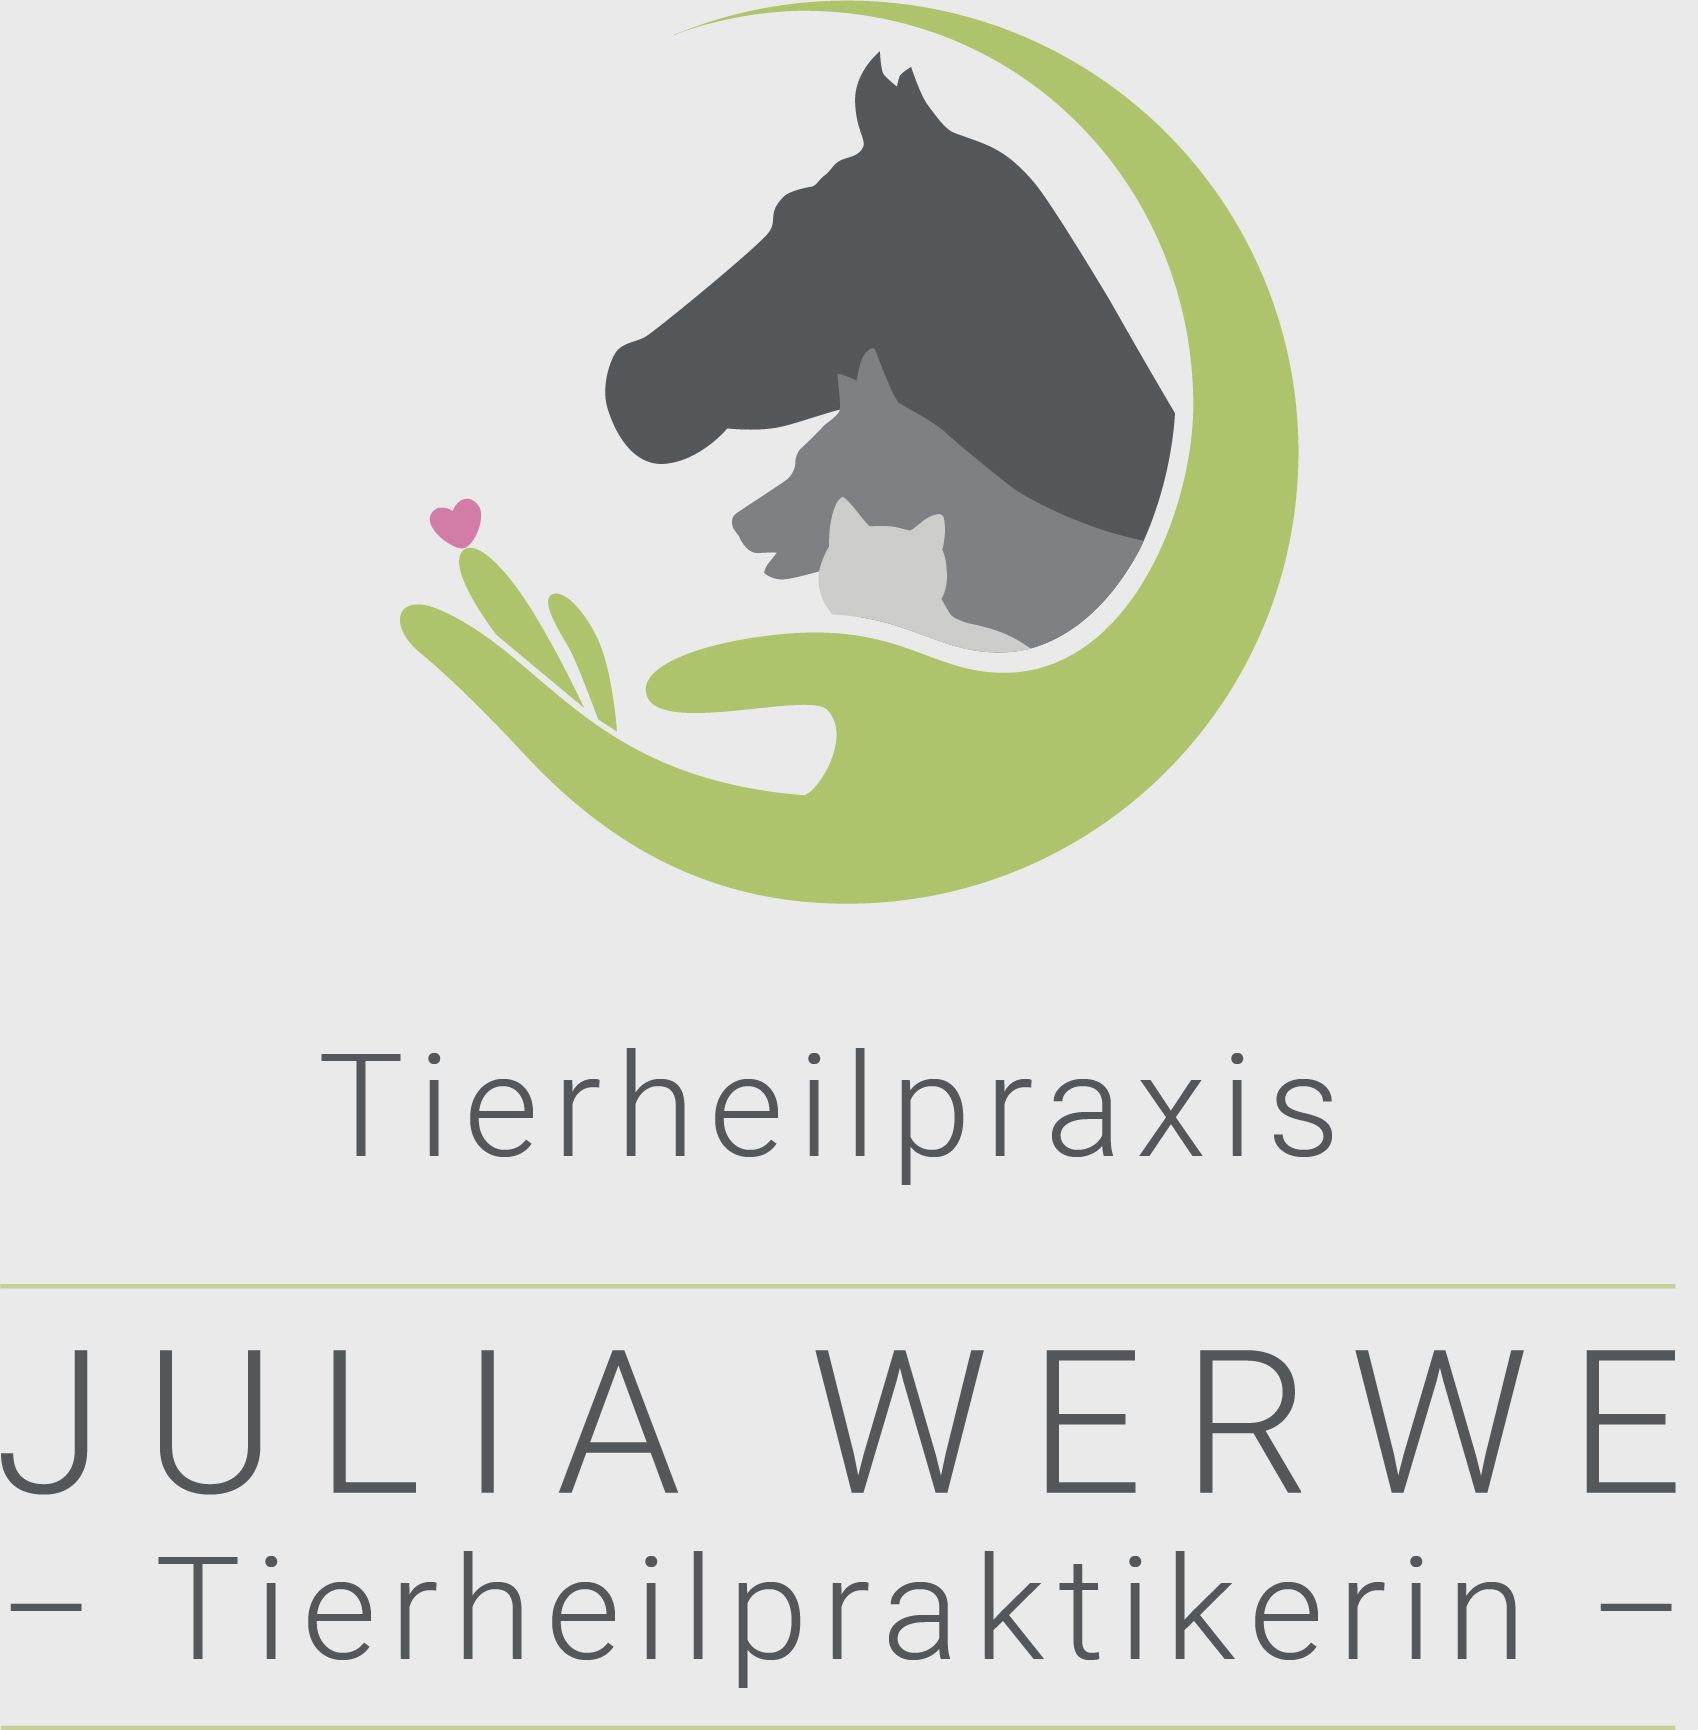 Tierheilpraxis Julia Werwe